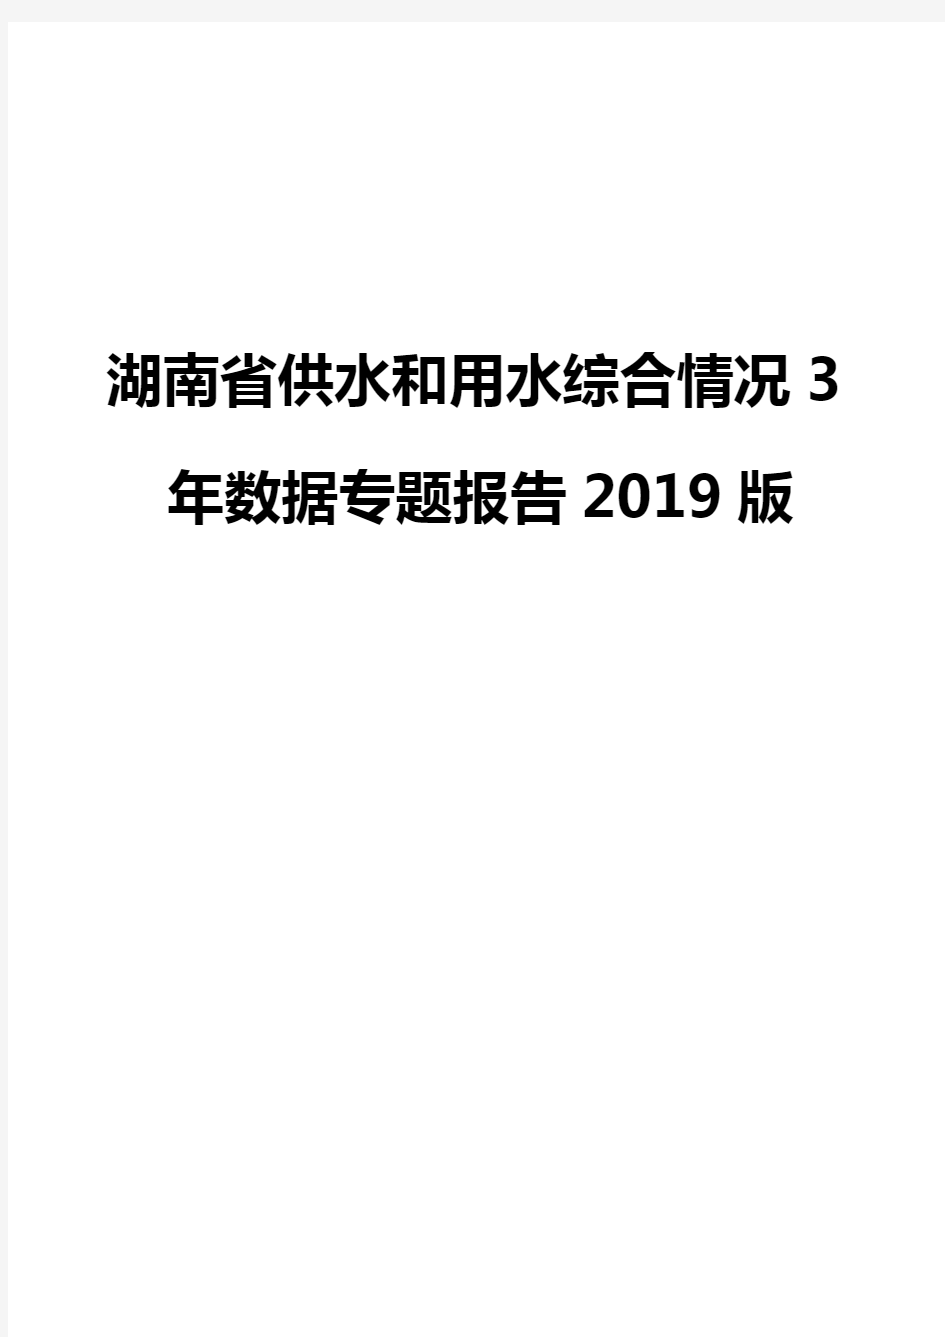 湖南省供水和用水综合情况3年数据专题报告2019版